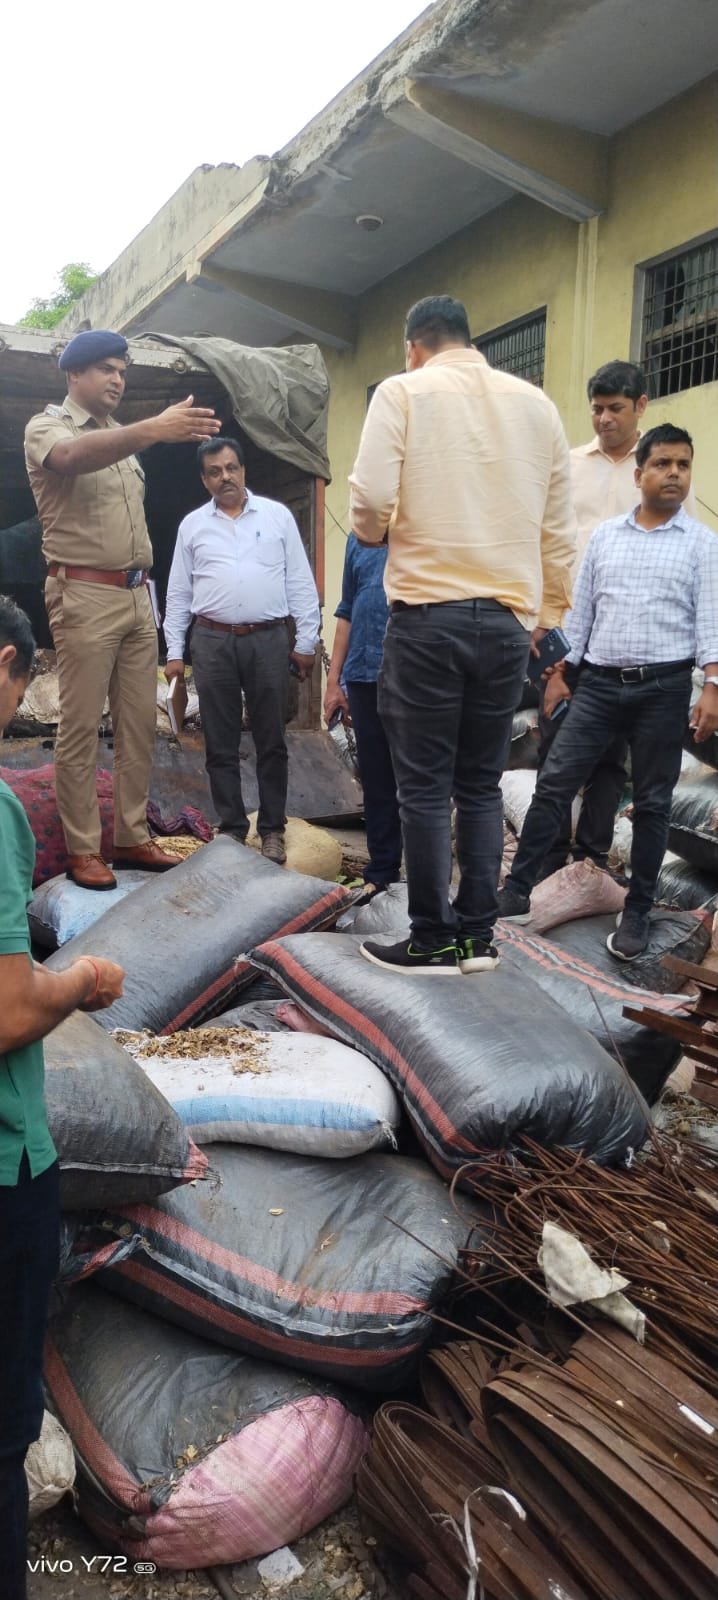 Agra news : साढ़े नौ करोड़ रुपए का ड्रग्स बरामद, ट्रक में थे डोडा पोस्त के 180 बोरे